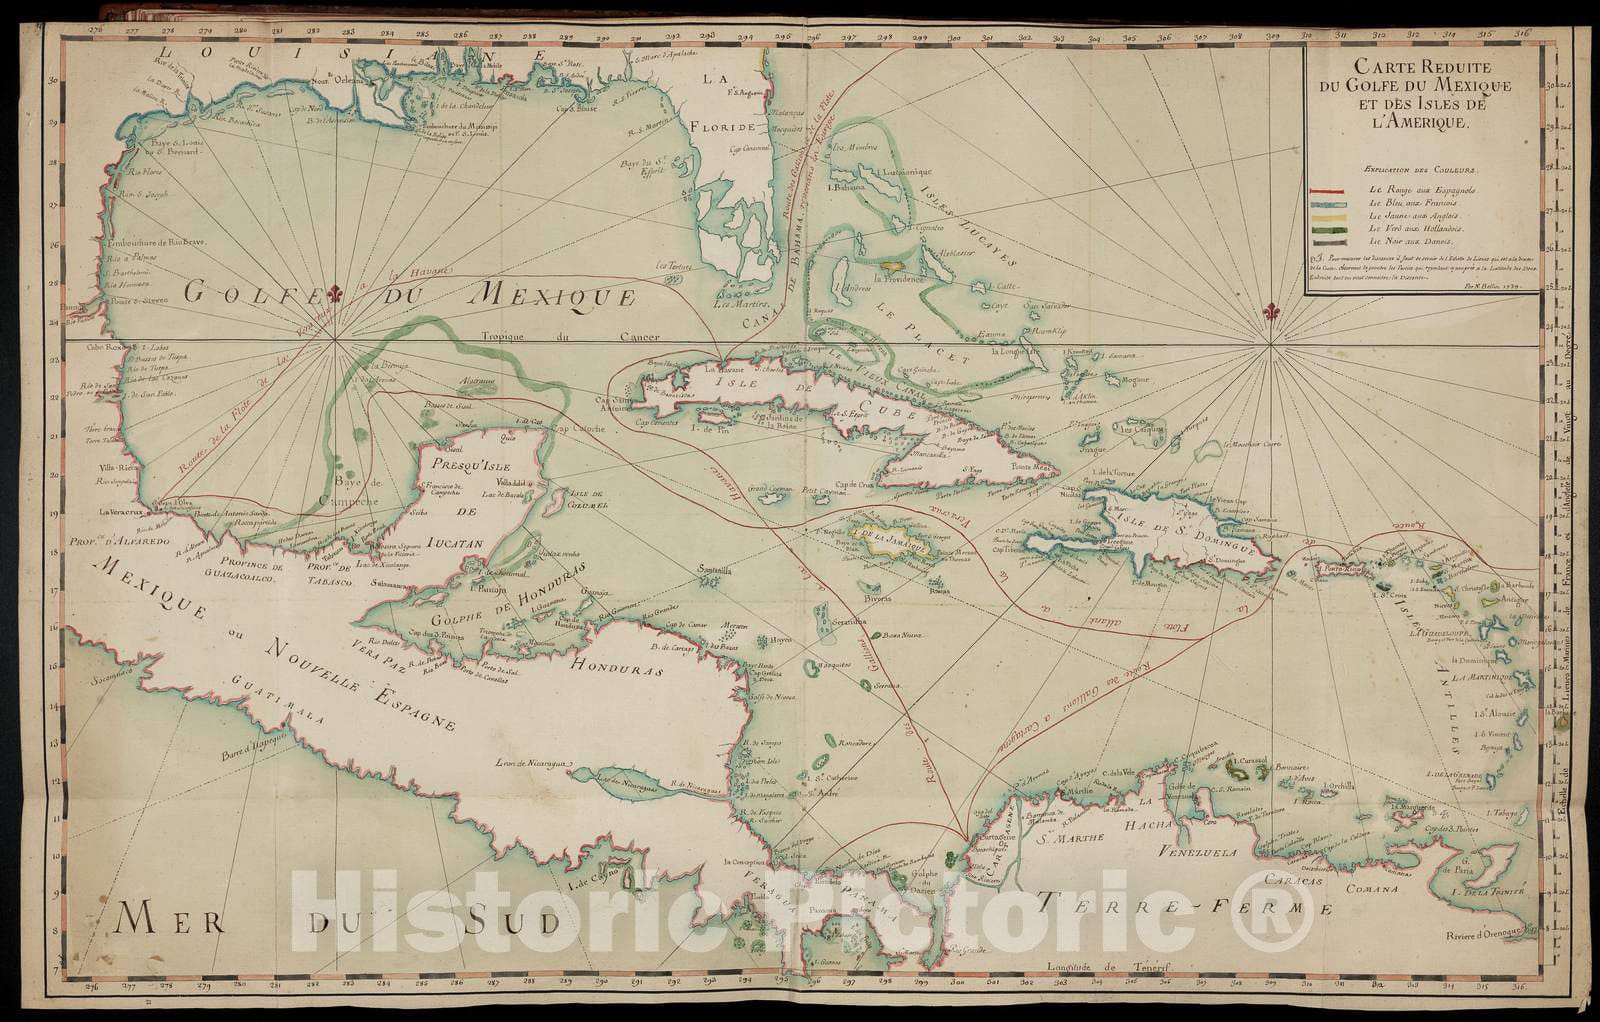 Historic 1745 Map - Cartes et Plans de l'Amerique. - Carte Reduite du Golphe du Mexique et des Isles de l'Amerique - Cartes geograp Ameriqu